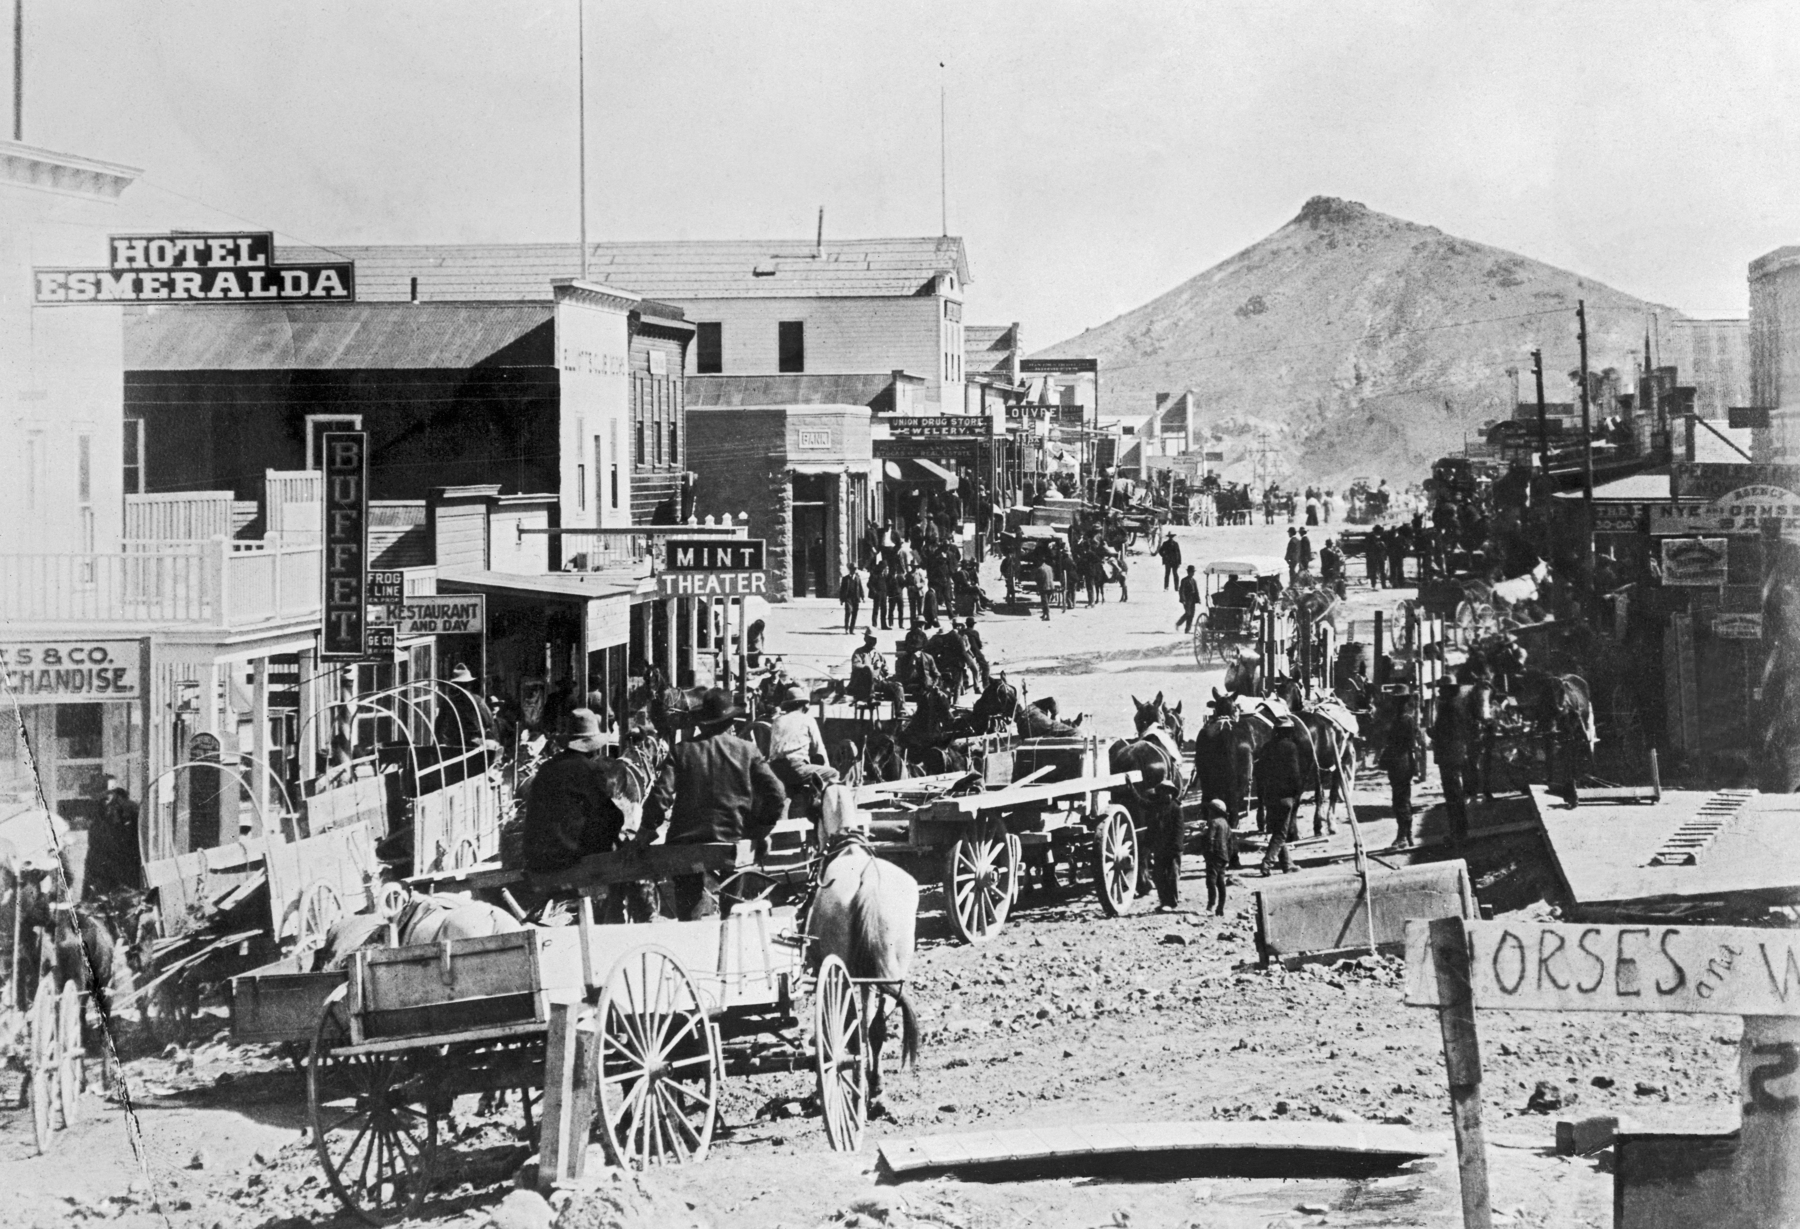 Fotografia em preto e branco. Em uma estrada de terra, cercada por algumas construções de madeira, homens em carroças puxadas por cavalos. Ao fundo, uma montanha alta.